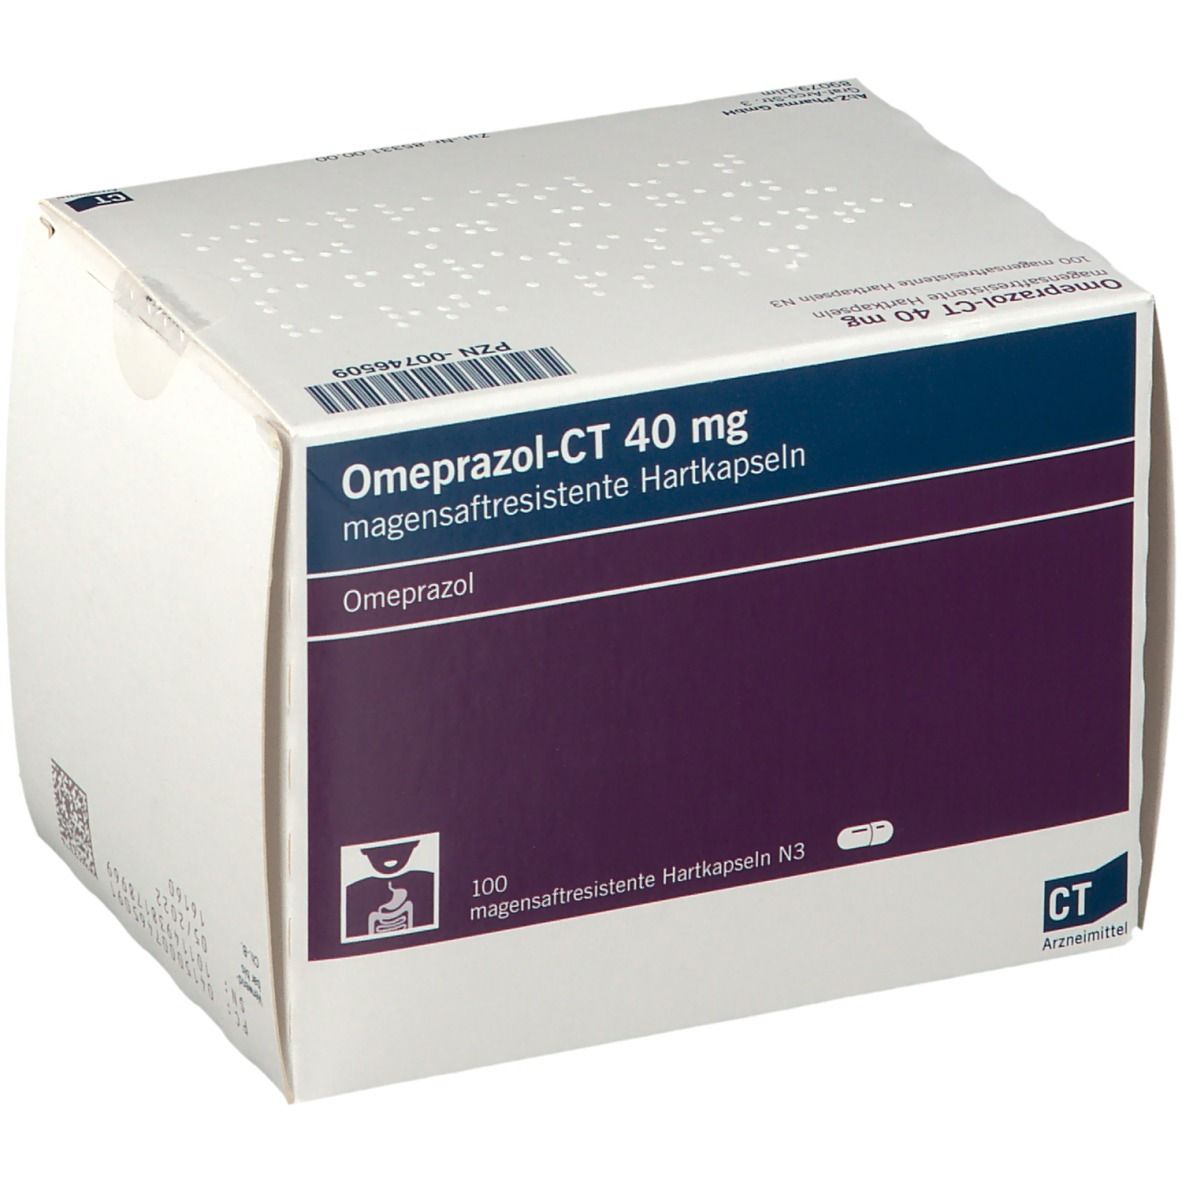 Omeprazol - Ct 40Mg a